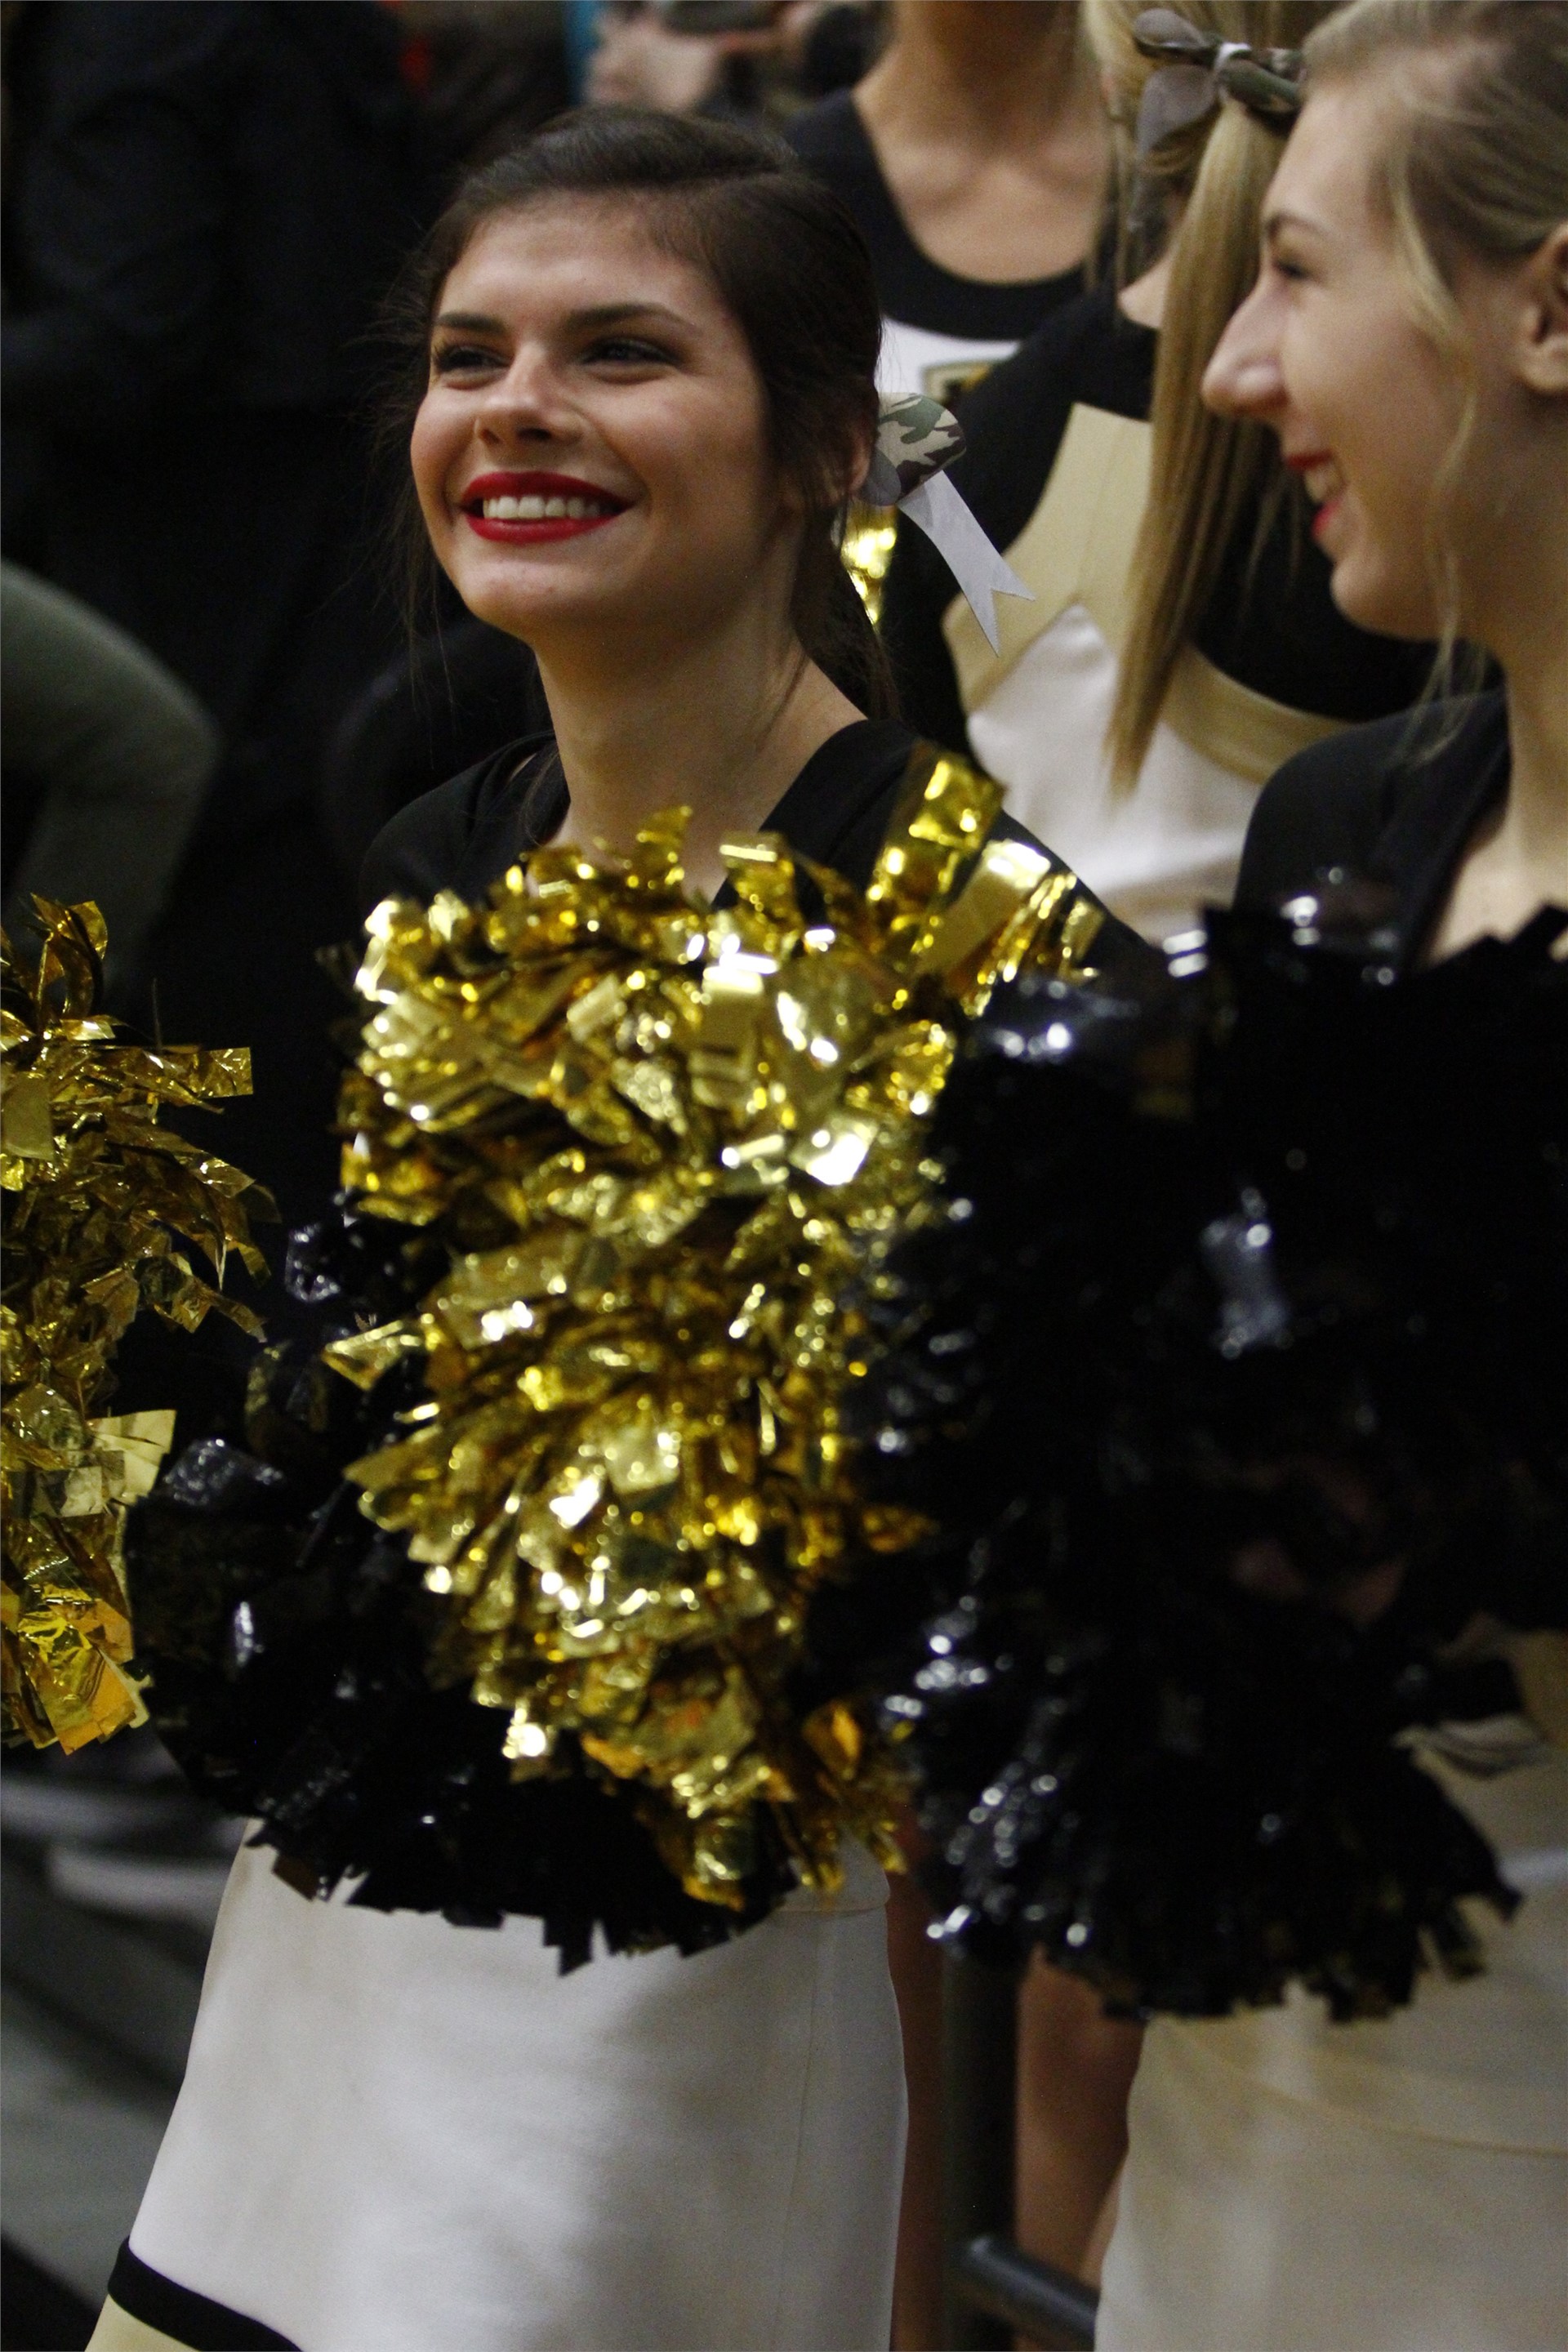 PHS cheerleader performing at a game